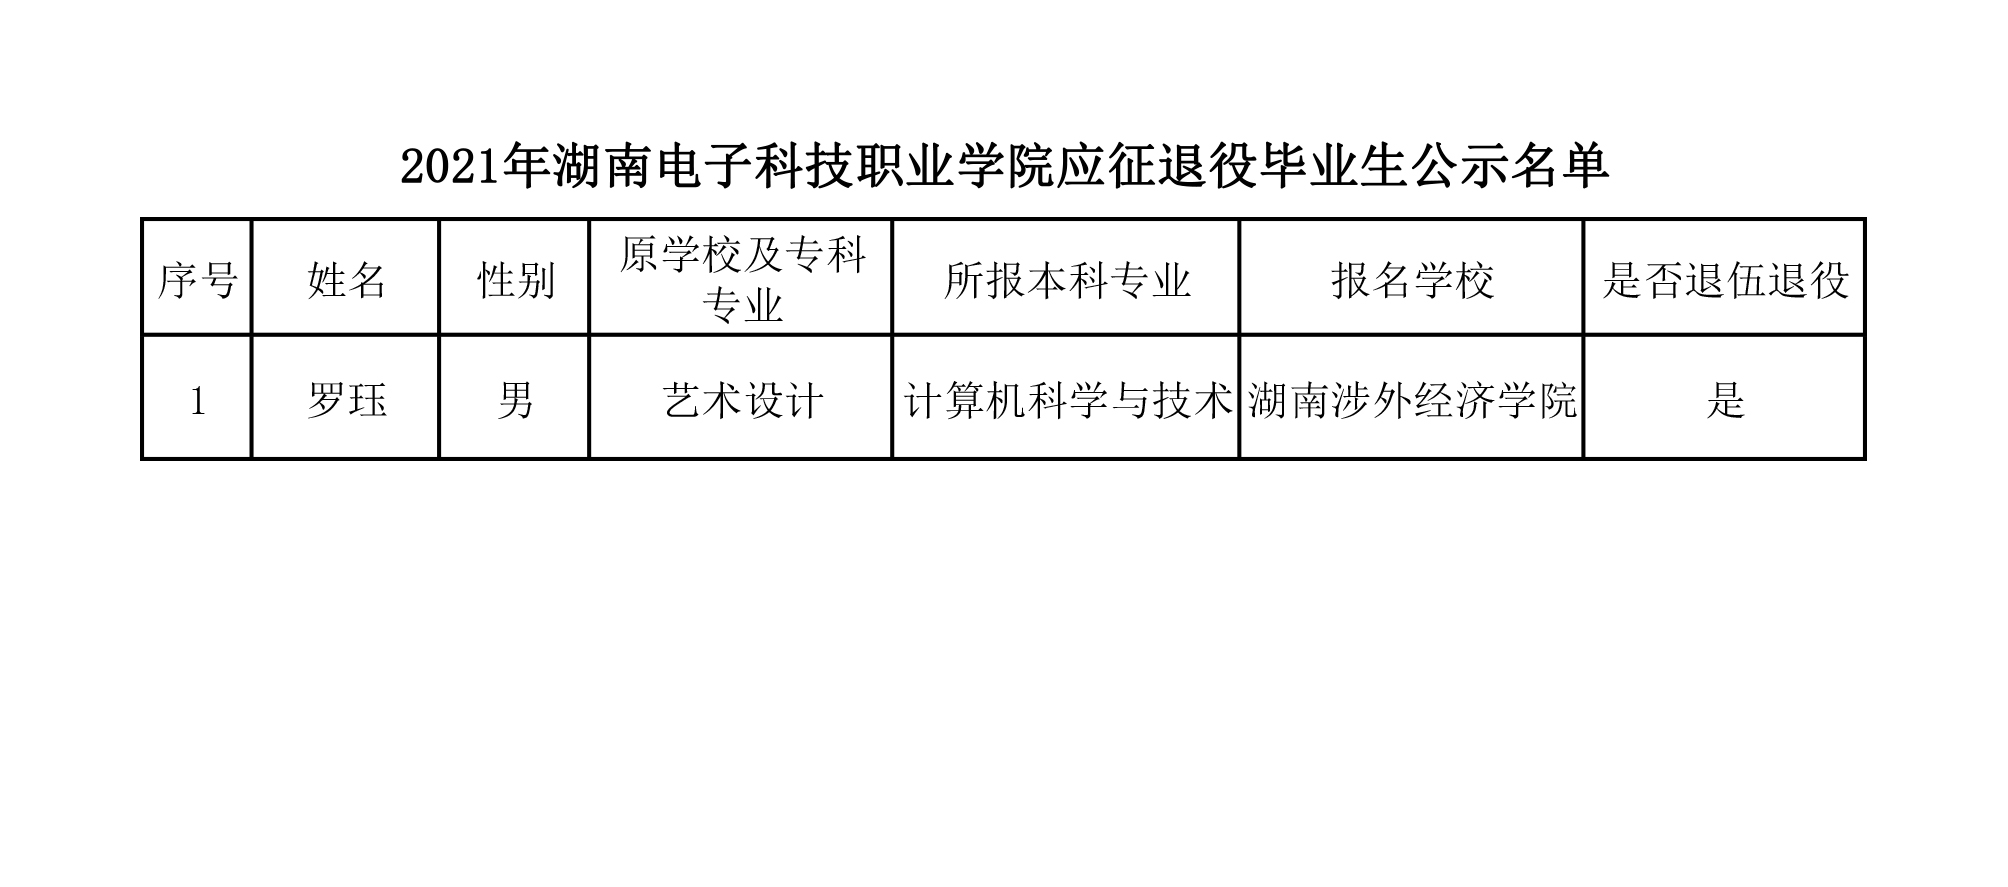 2021年湖南電子科技職業學院應征退役畢業生公示名單.jpg